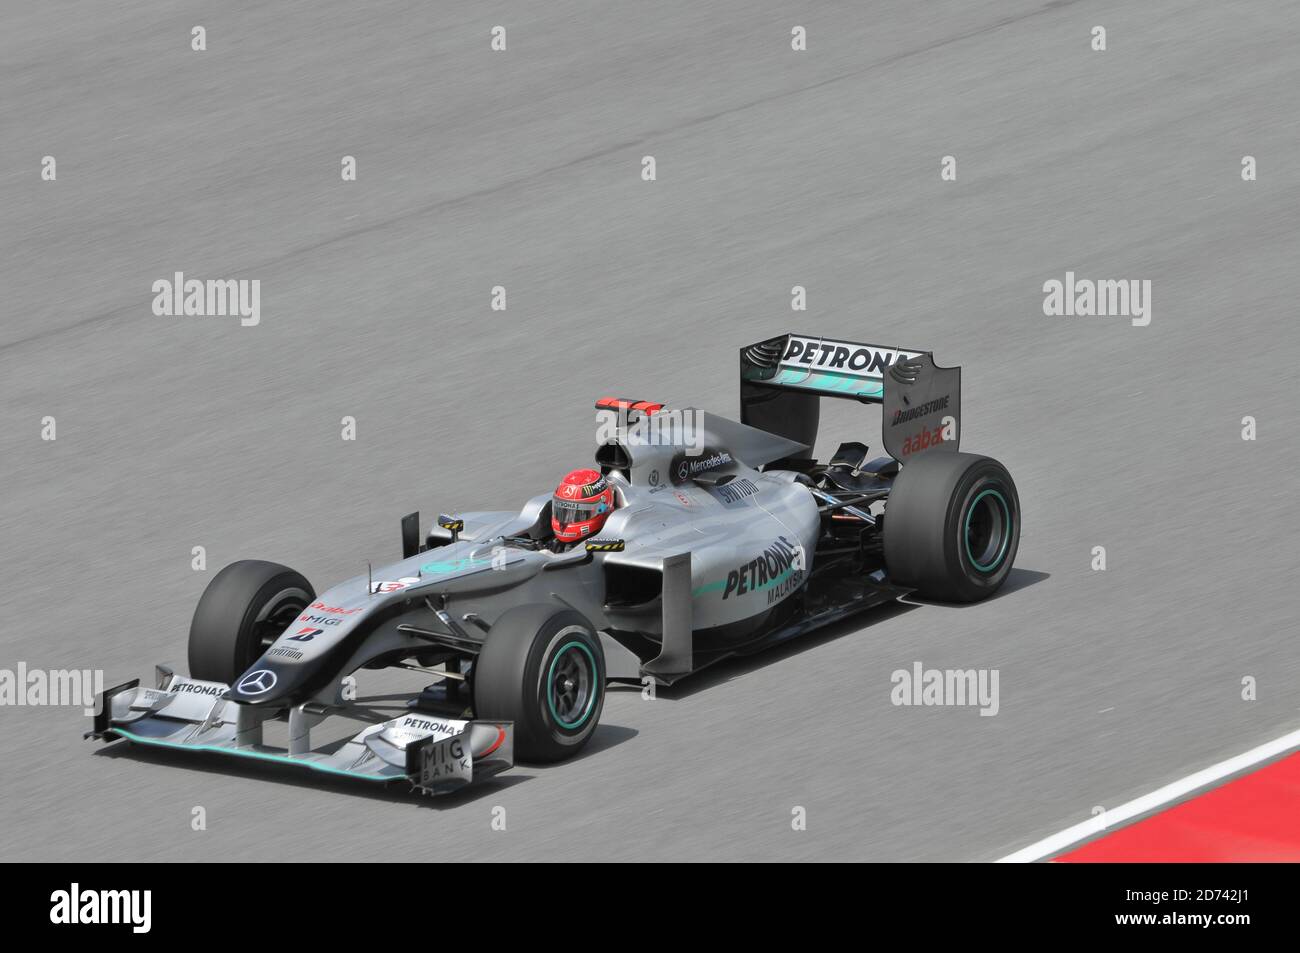 SEPANG, MALAISIE - 2 AVRIL : Michael Schumacher, pilote de Formule 1 Mercedes, conduit lors de la première séance de pratique au Setang F1 circulaire Banque D'Images